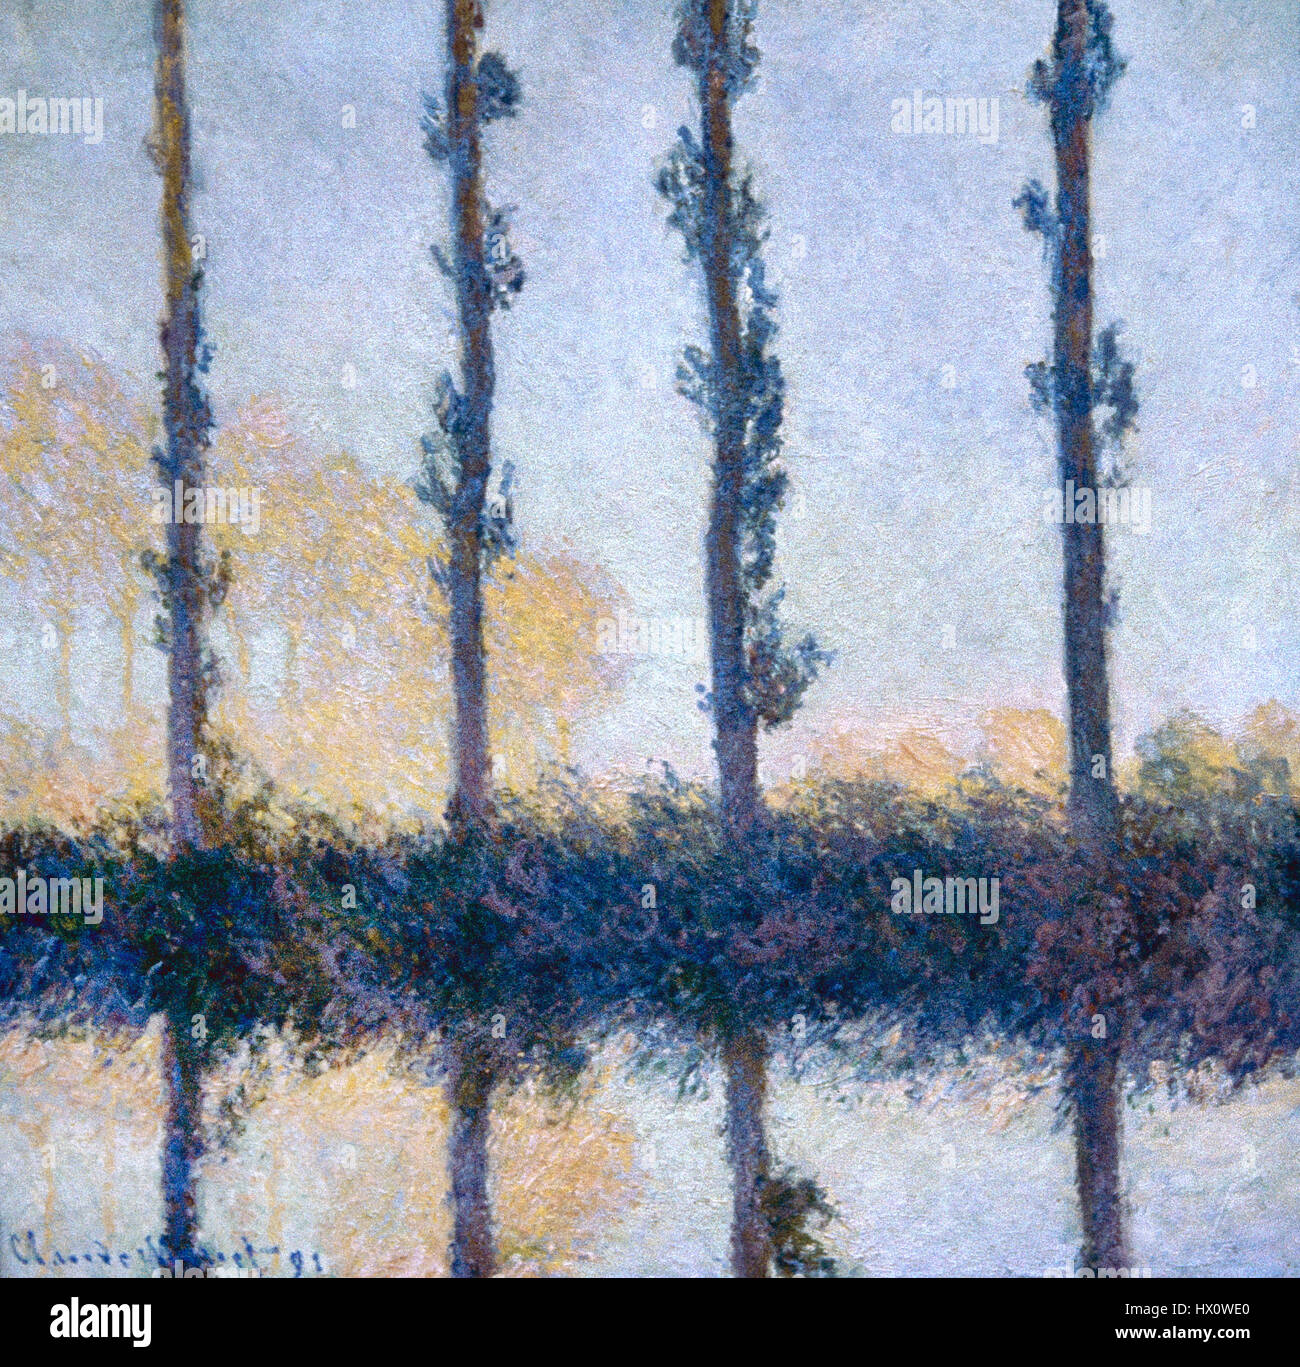 Claude Monet (1906-1957). Peintre impressionniste français. Les quatre arbres, 1891. Huile sur toile. Metropolitan Museum of Art New York, United States. Banque D'Images